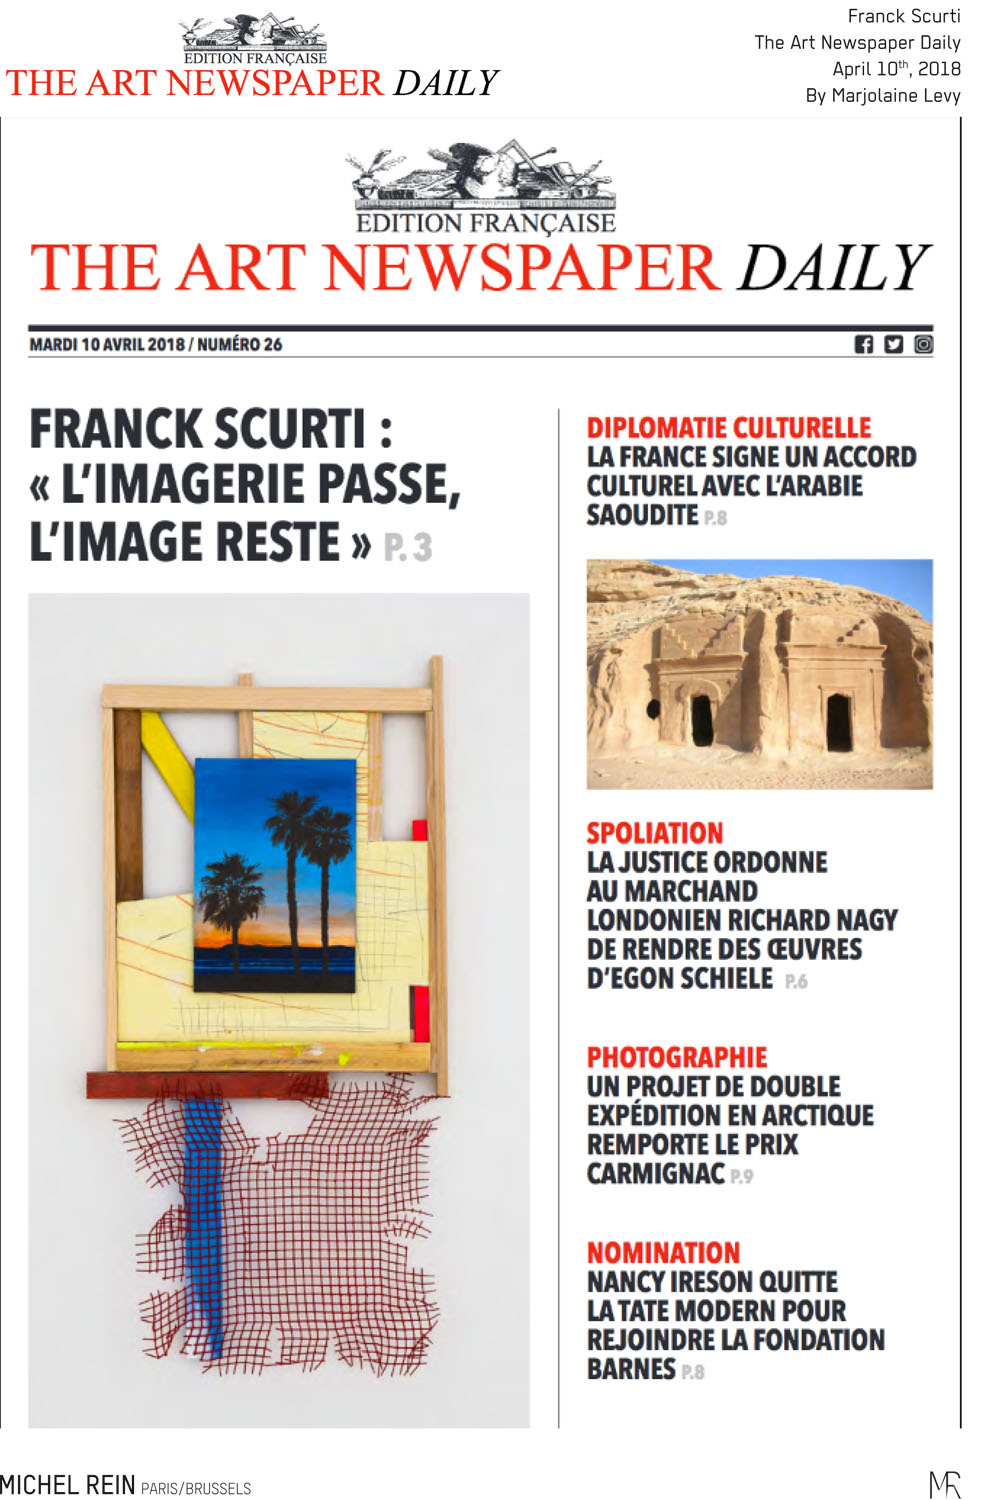 Franck Scurti - The Art Newspaper